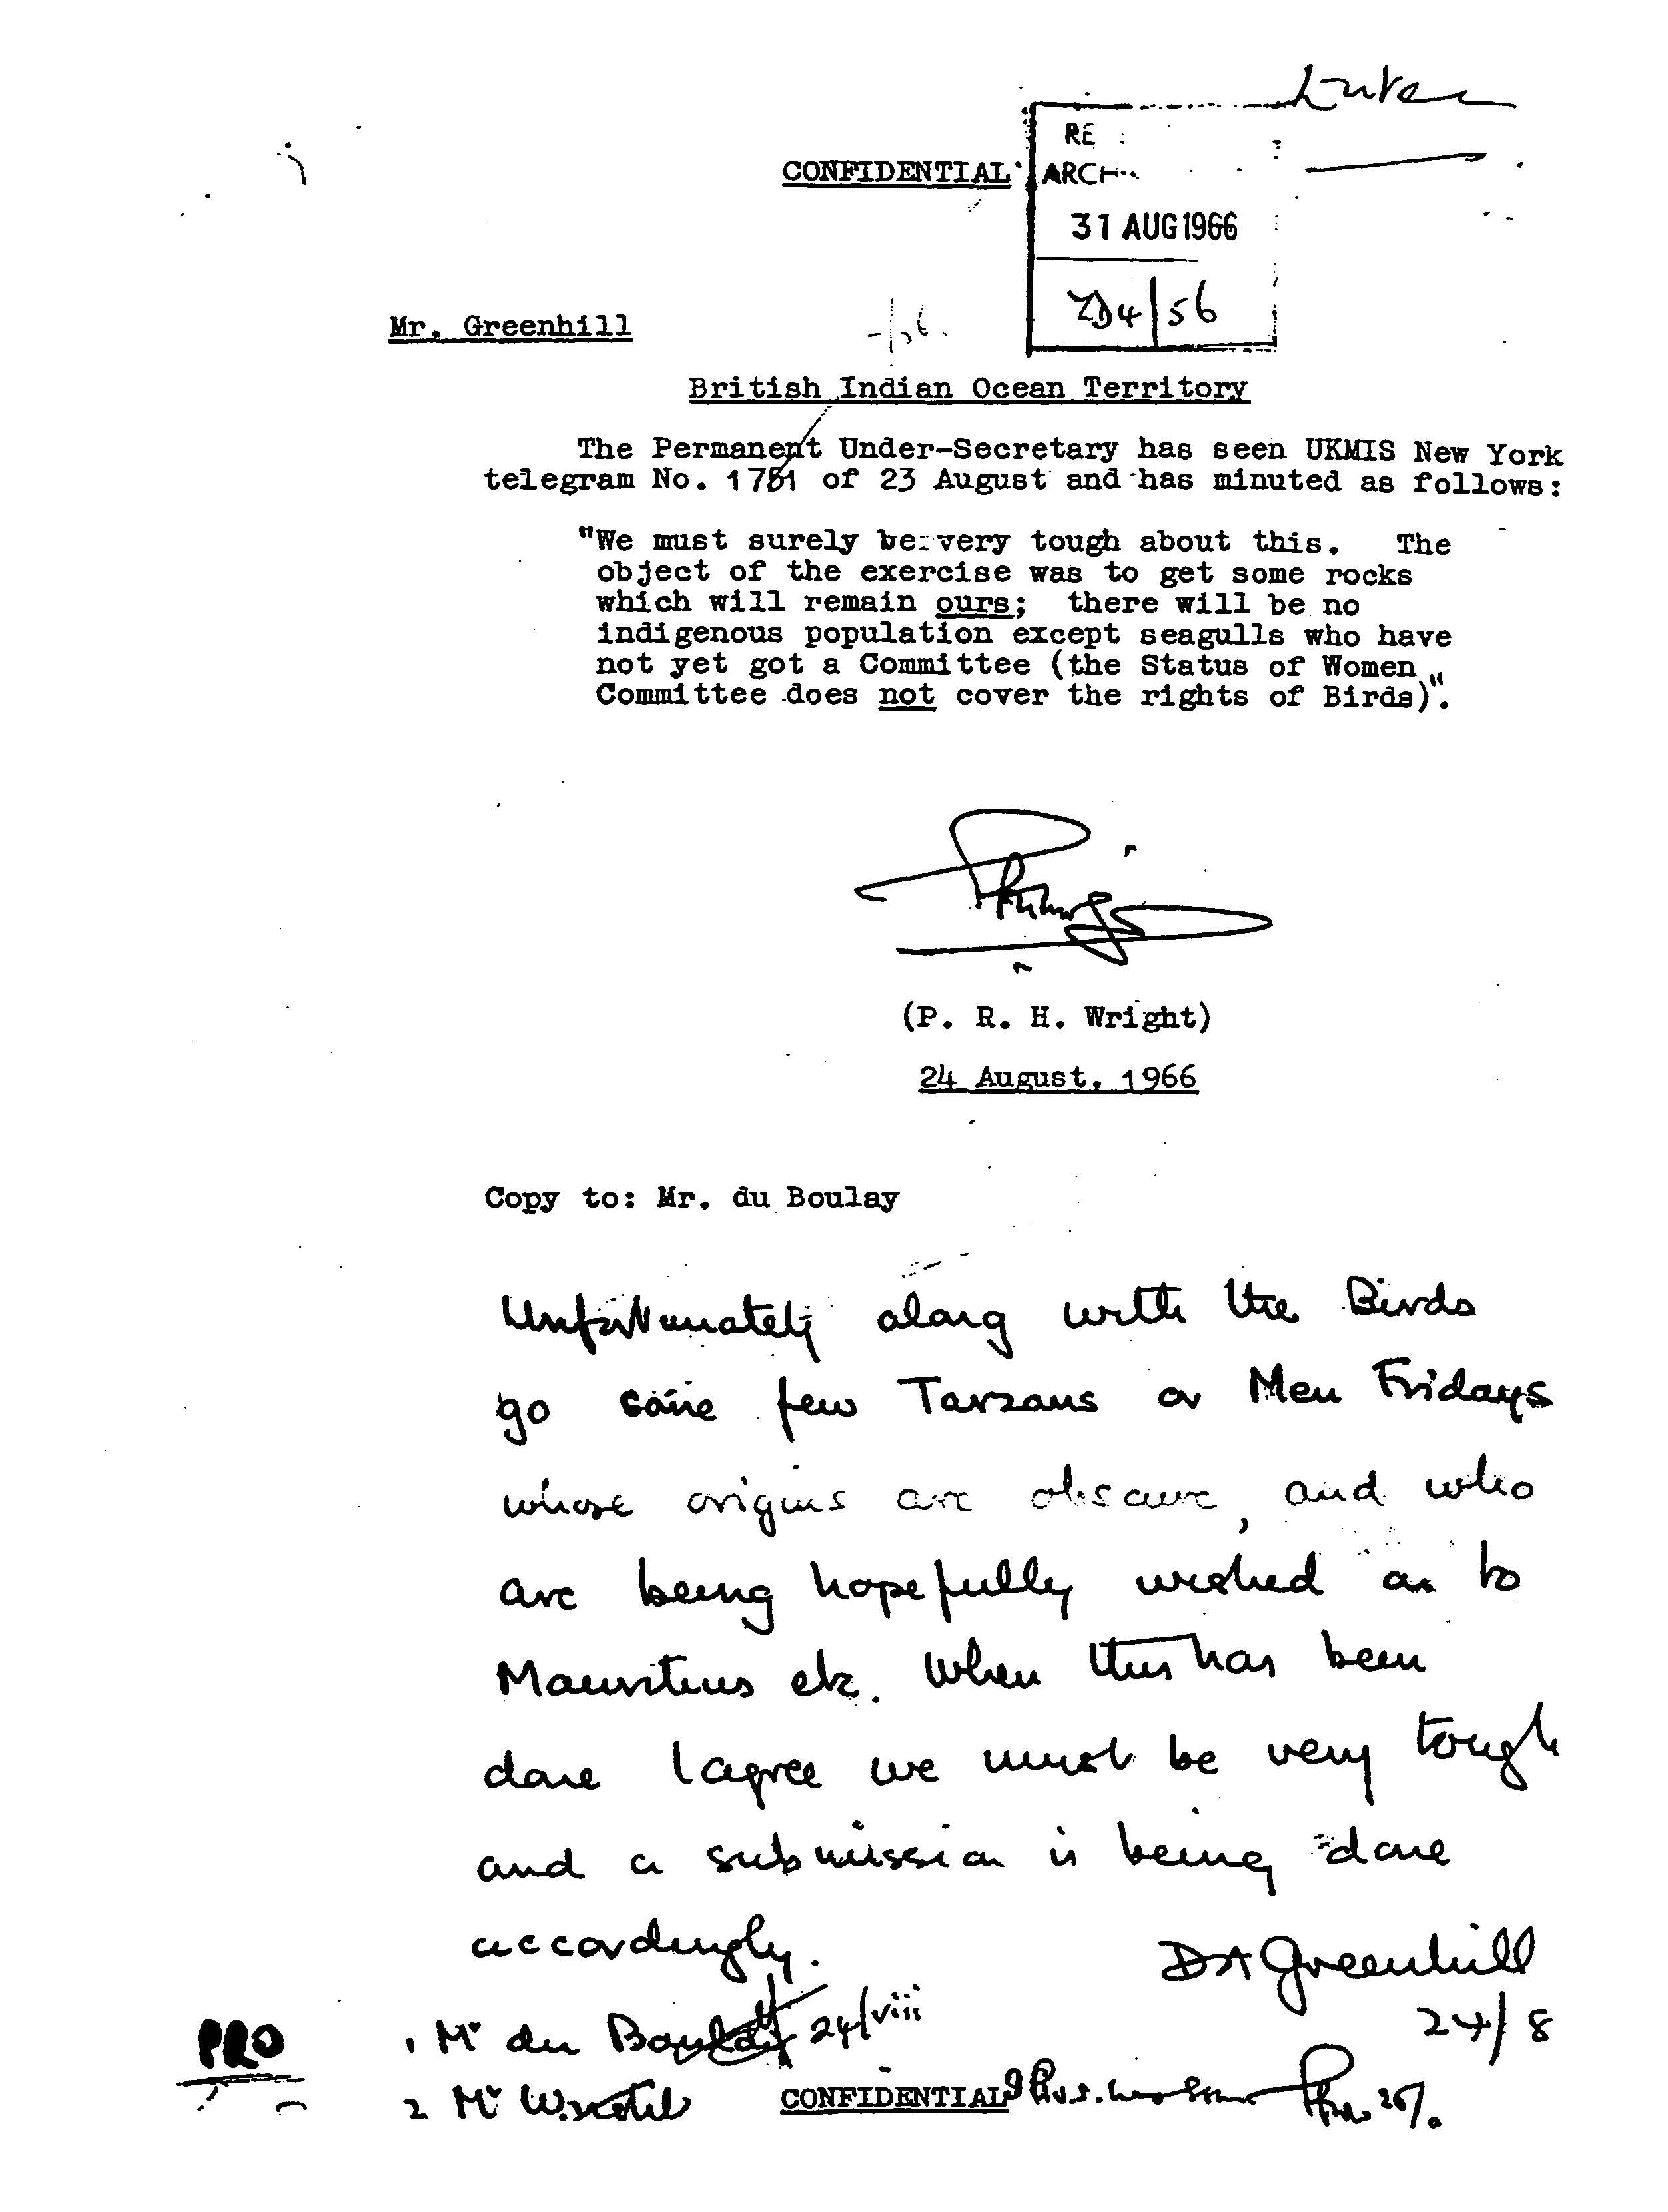 Comunicación diplomática británica del 24 de agosto de 1966: ''Por desgracia, junto con las aves, van algunos pocos Tarzanes o Man Fridays.'' 40 años después, Colin Roberts volvió a referirse en esos términos a los pobladores de las islas.